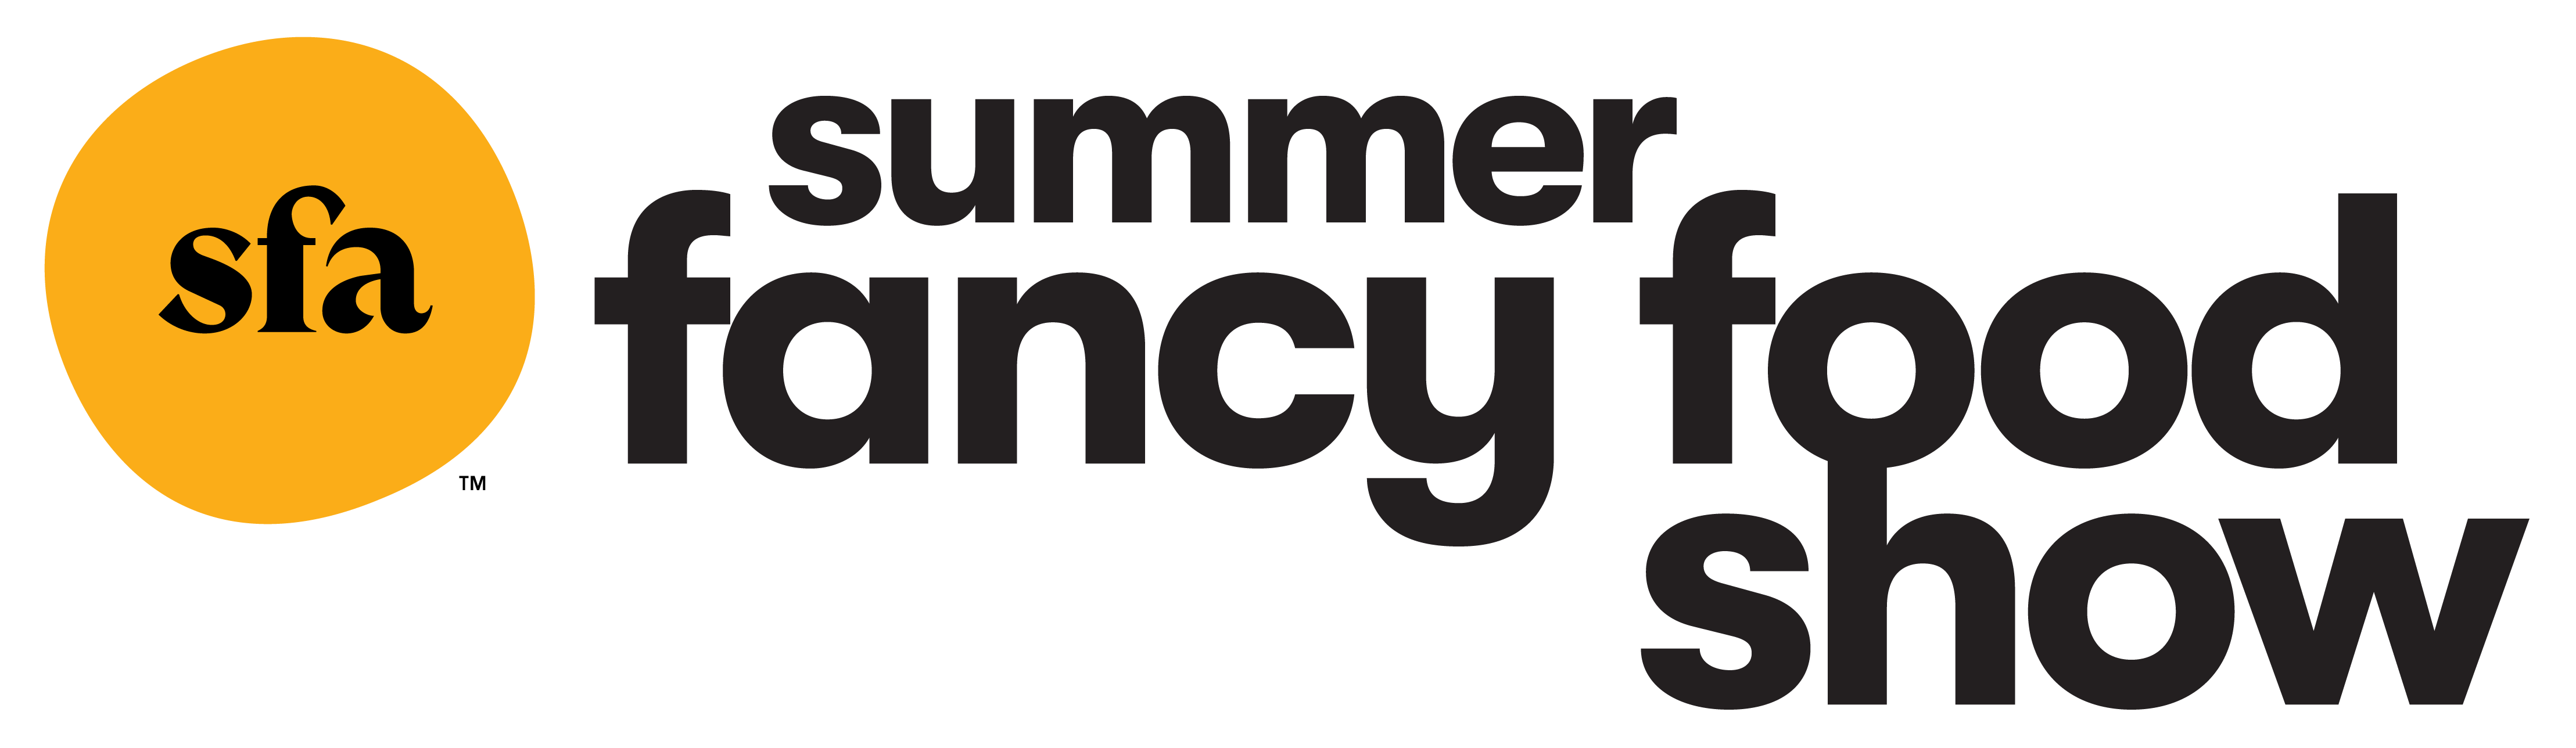 summer show logo